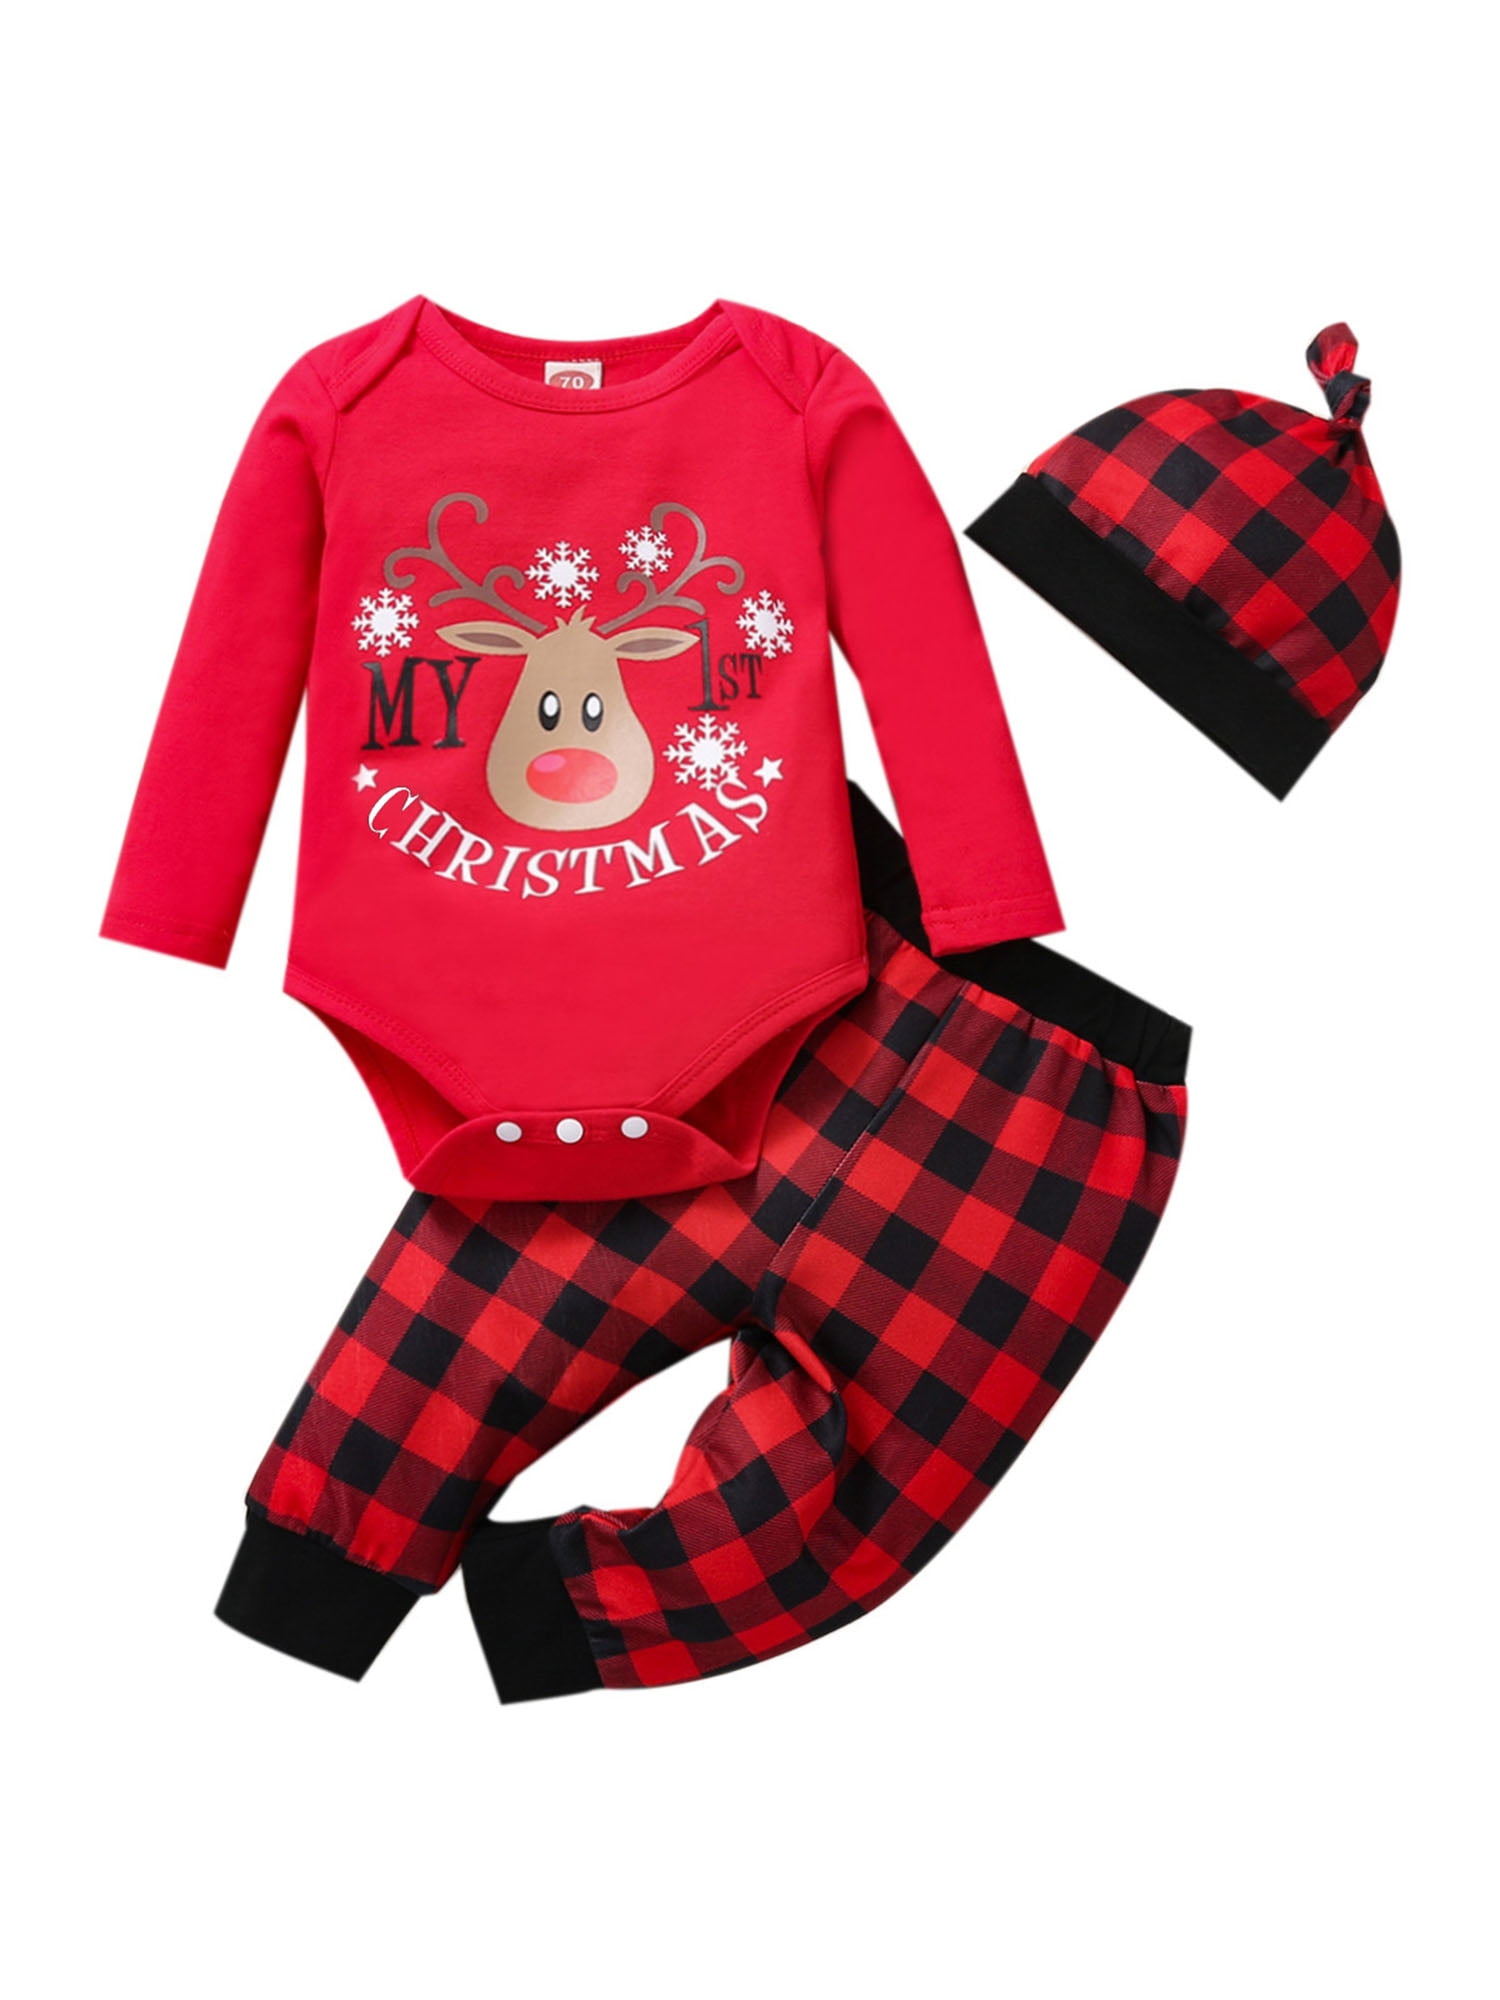 Baby Boy Girl 2pcs Christmas Suit Hoodies Deer Print Long Sleeve Top+Plaid Pants